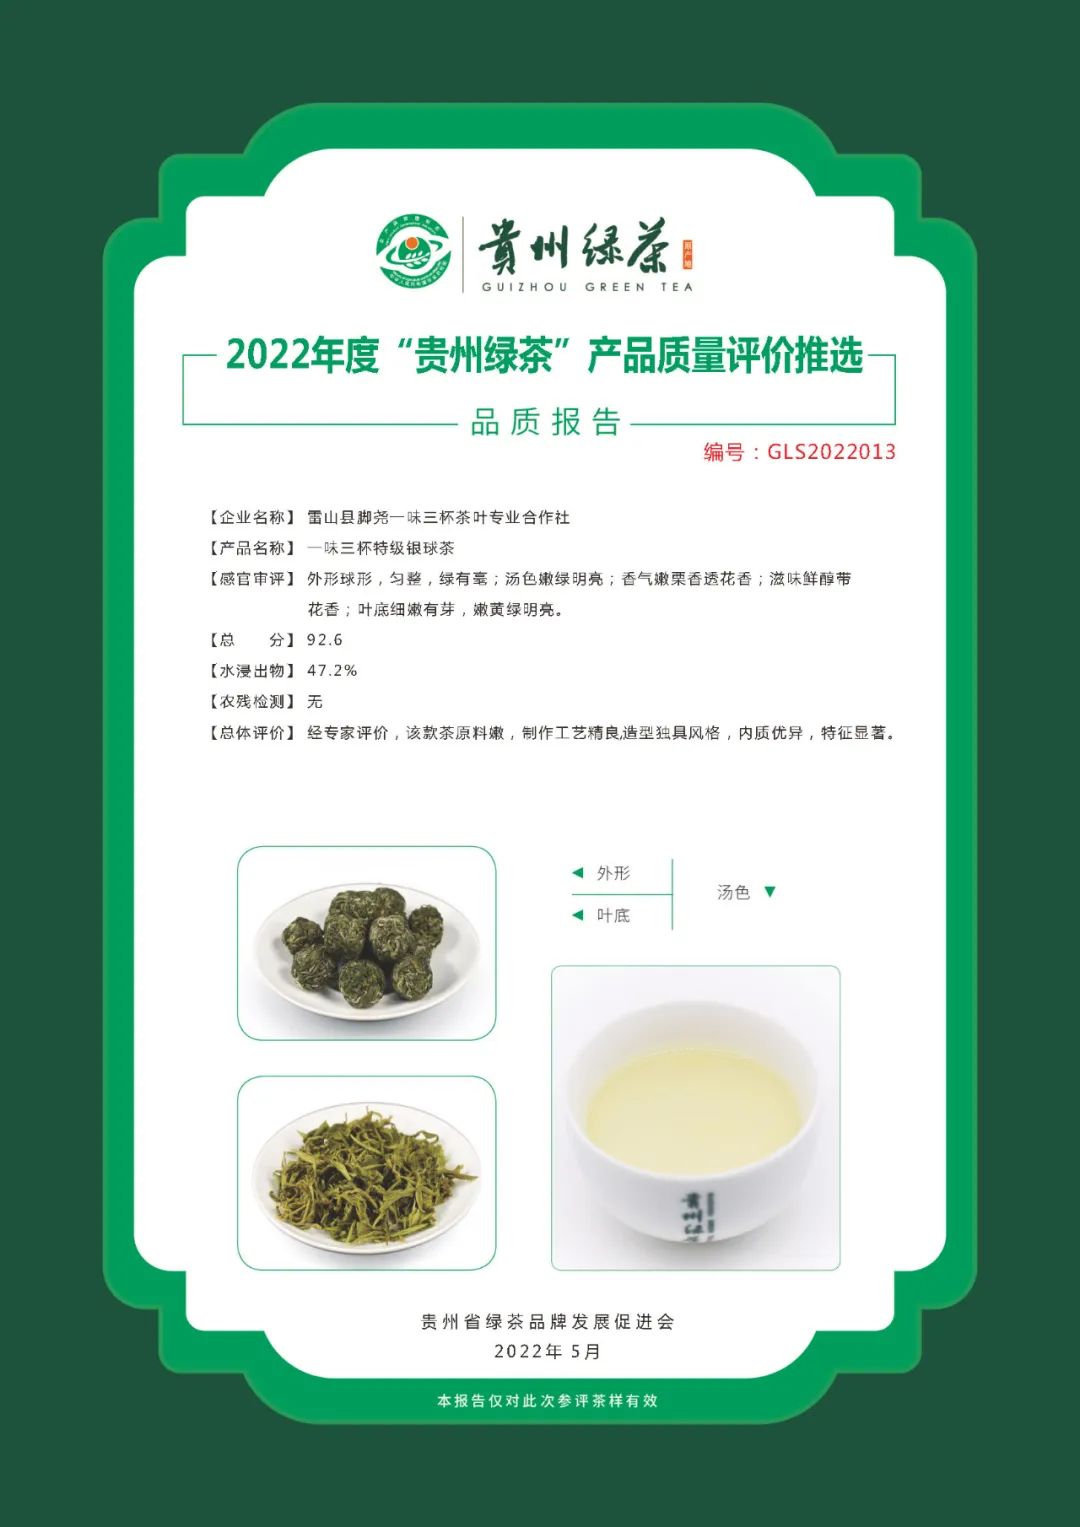 2022年“贵州绿茶”品质报告丨雷山县脚尧一味三杯茶叶专业合作社